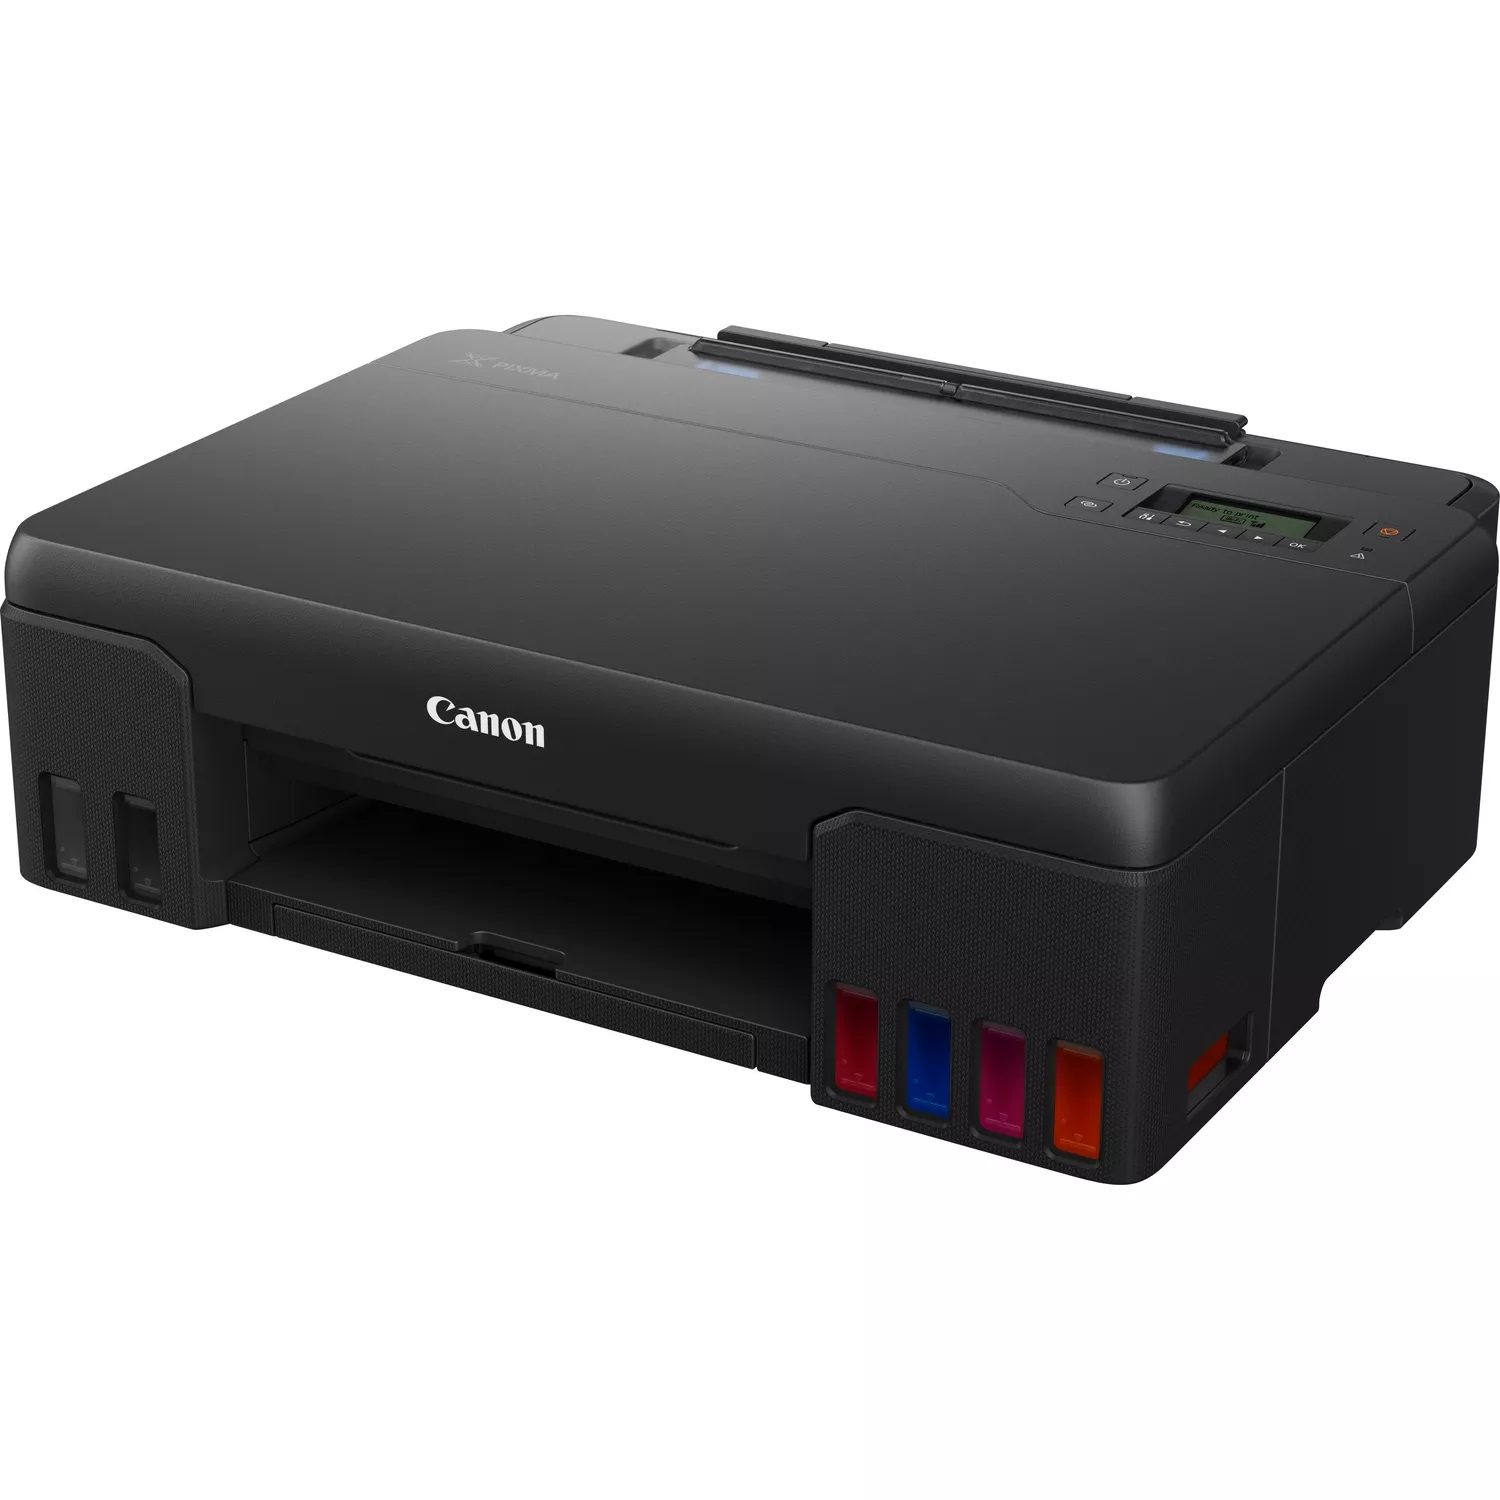 Canon pixma g650 stampante multifunzione laser a colori a4 wi-fi 4800 x 1200